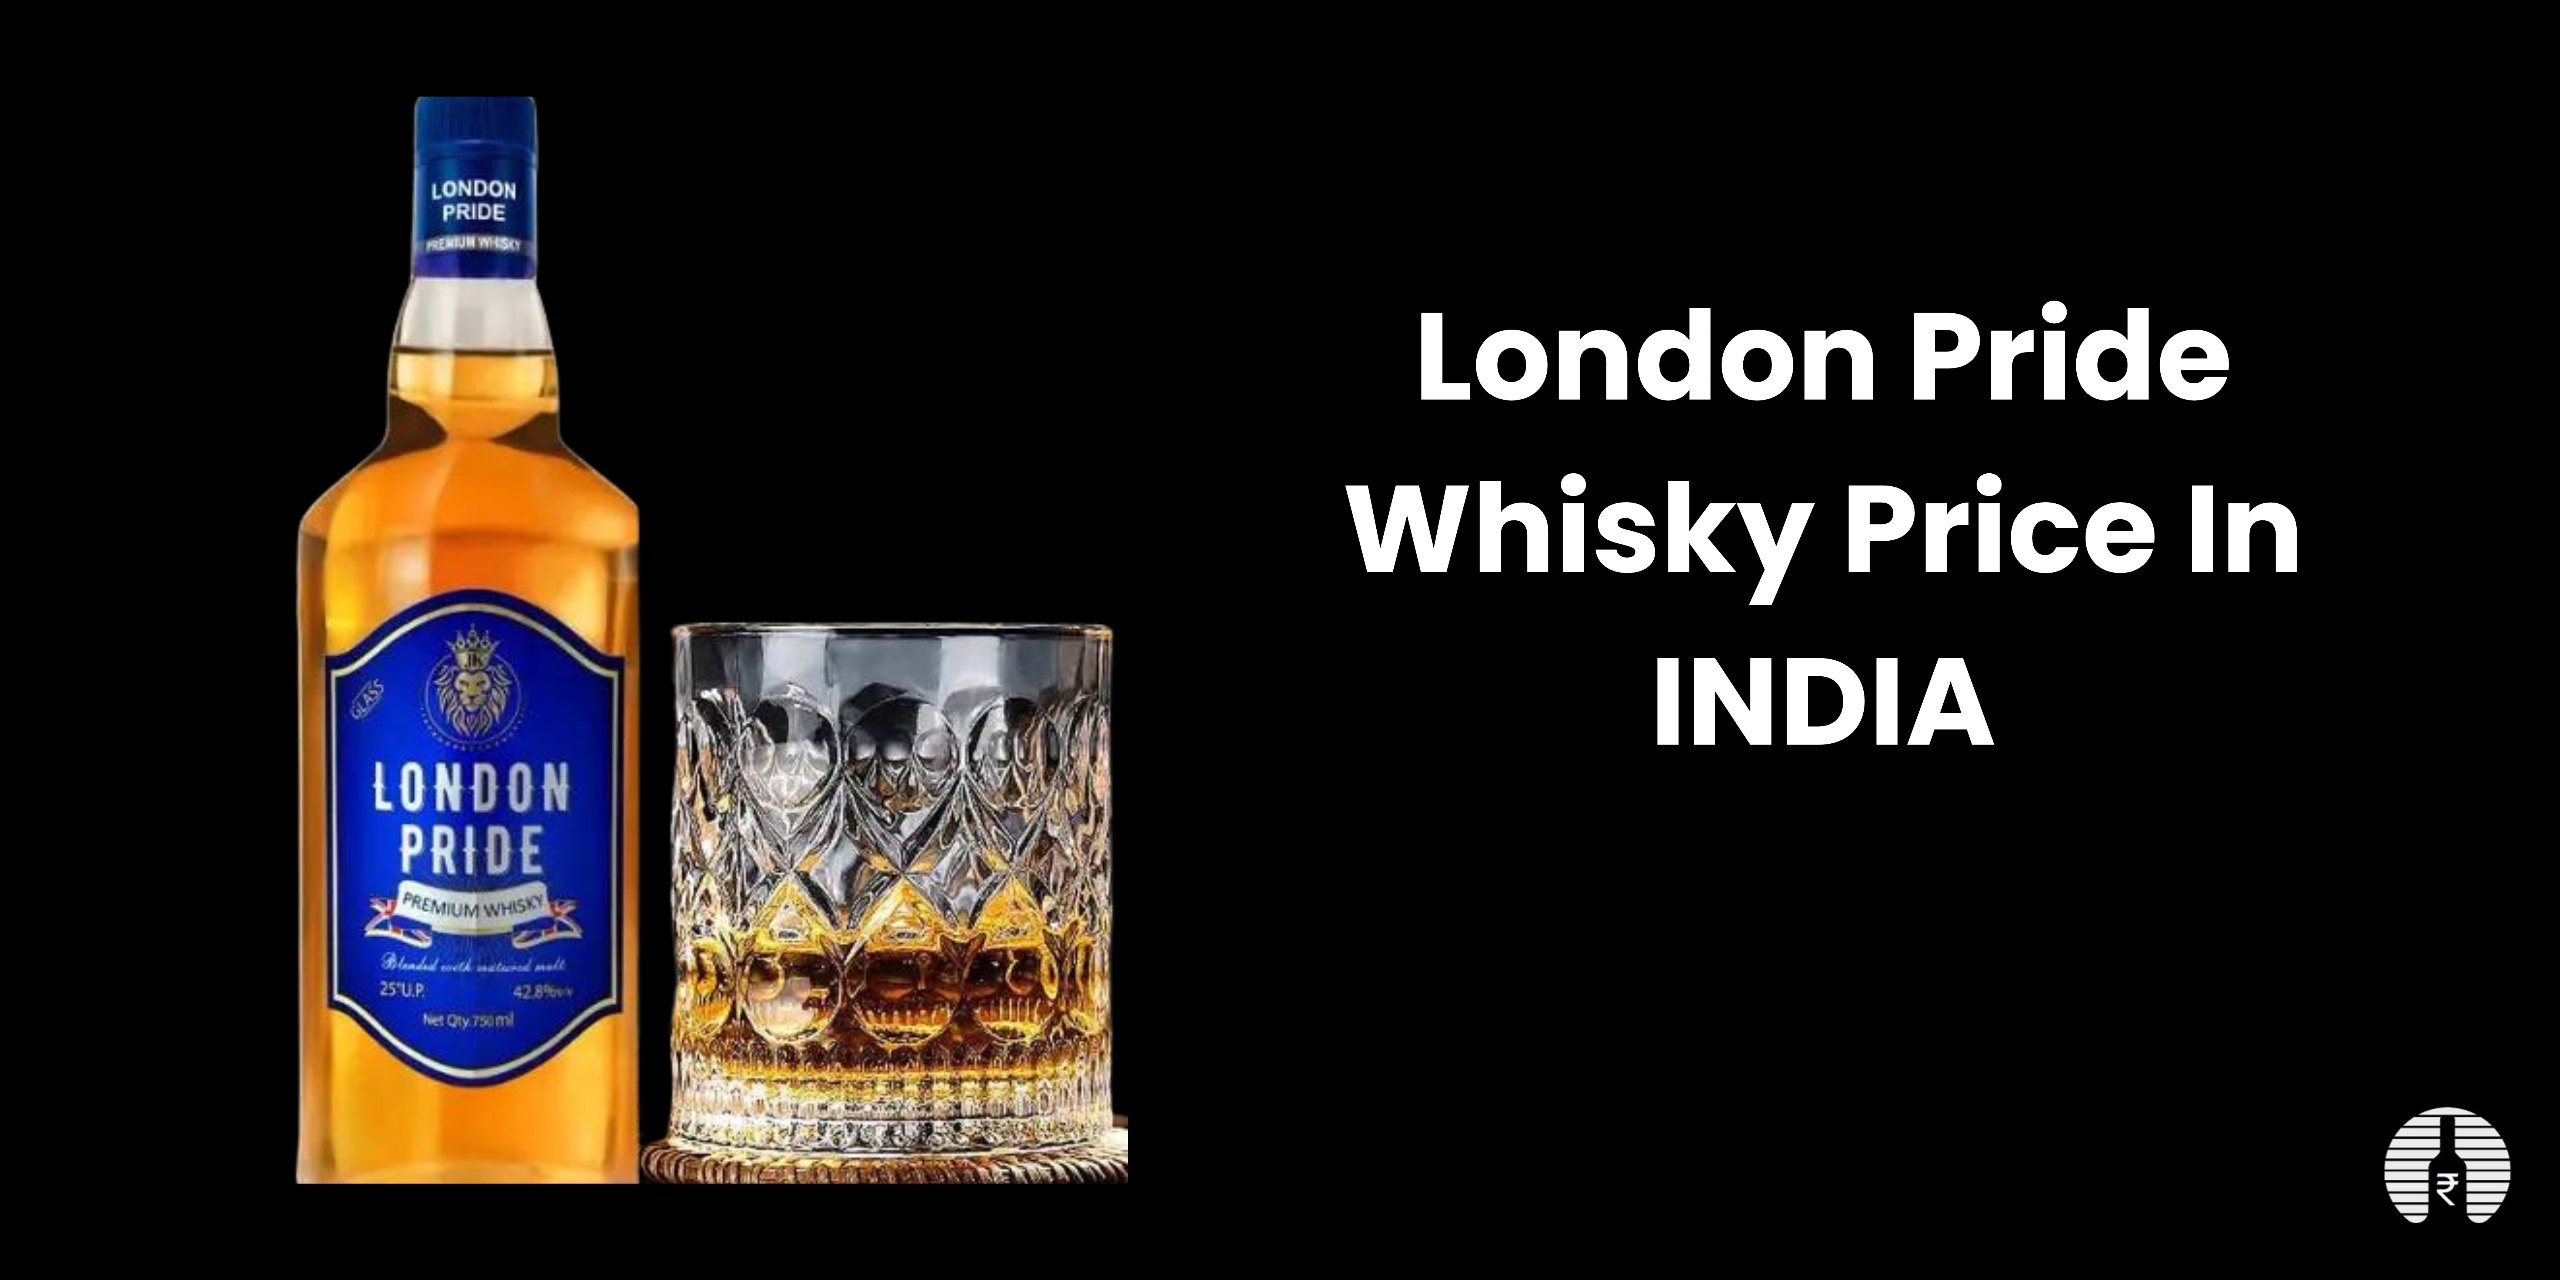 London Pride whisky price in India